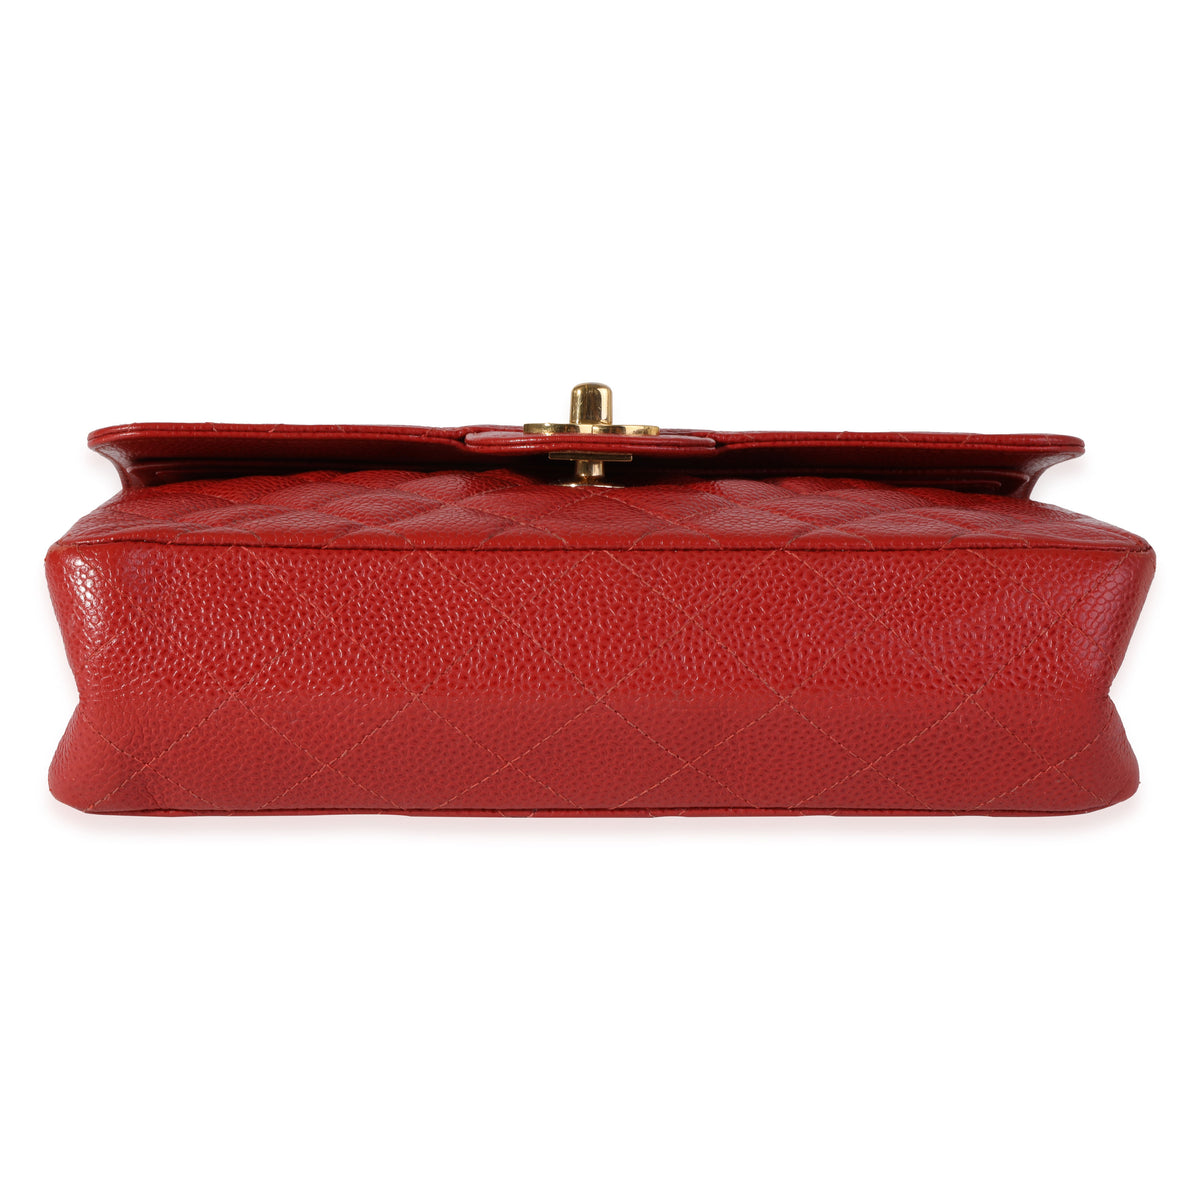 Louis Vuitton Red Epi Leather Speedy 25, myGemma, CH